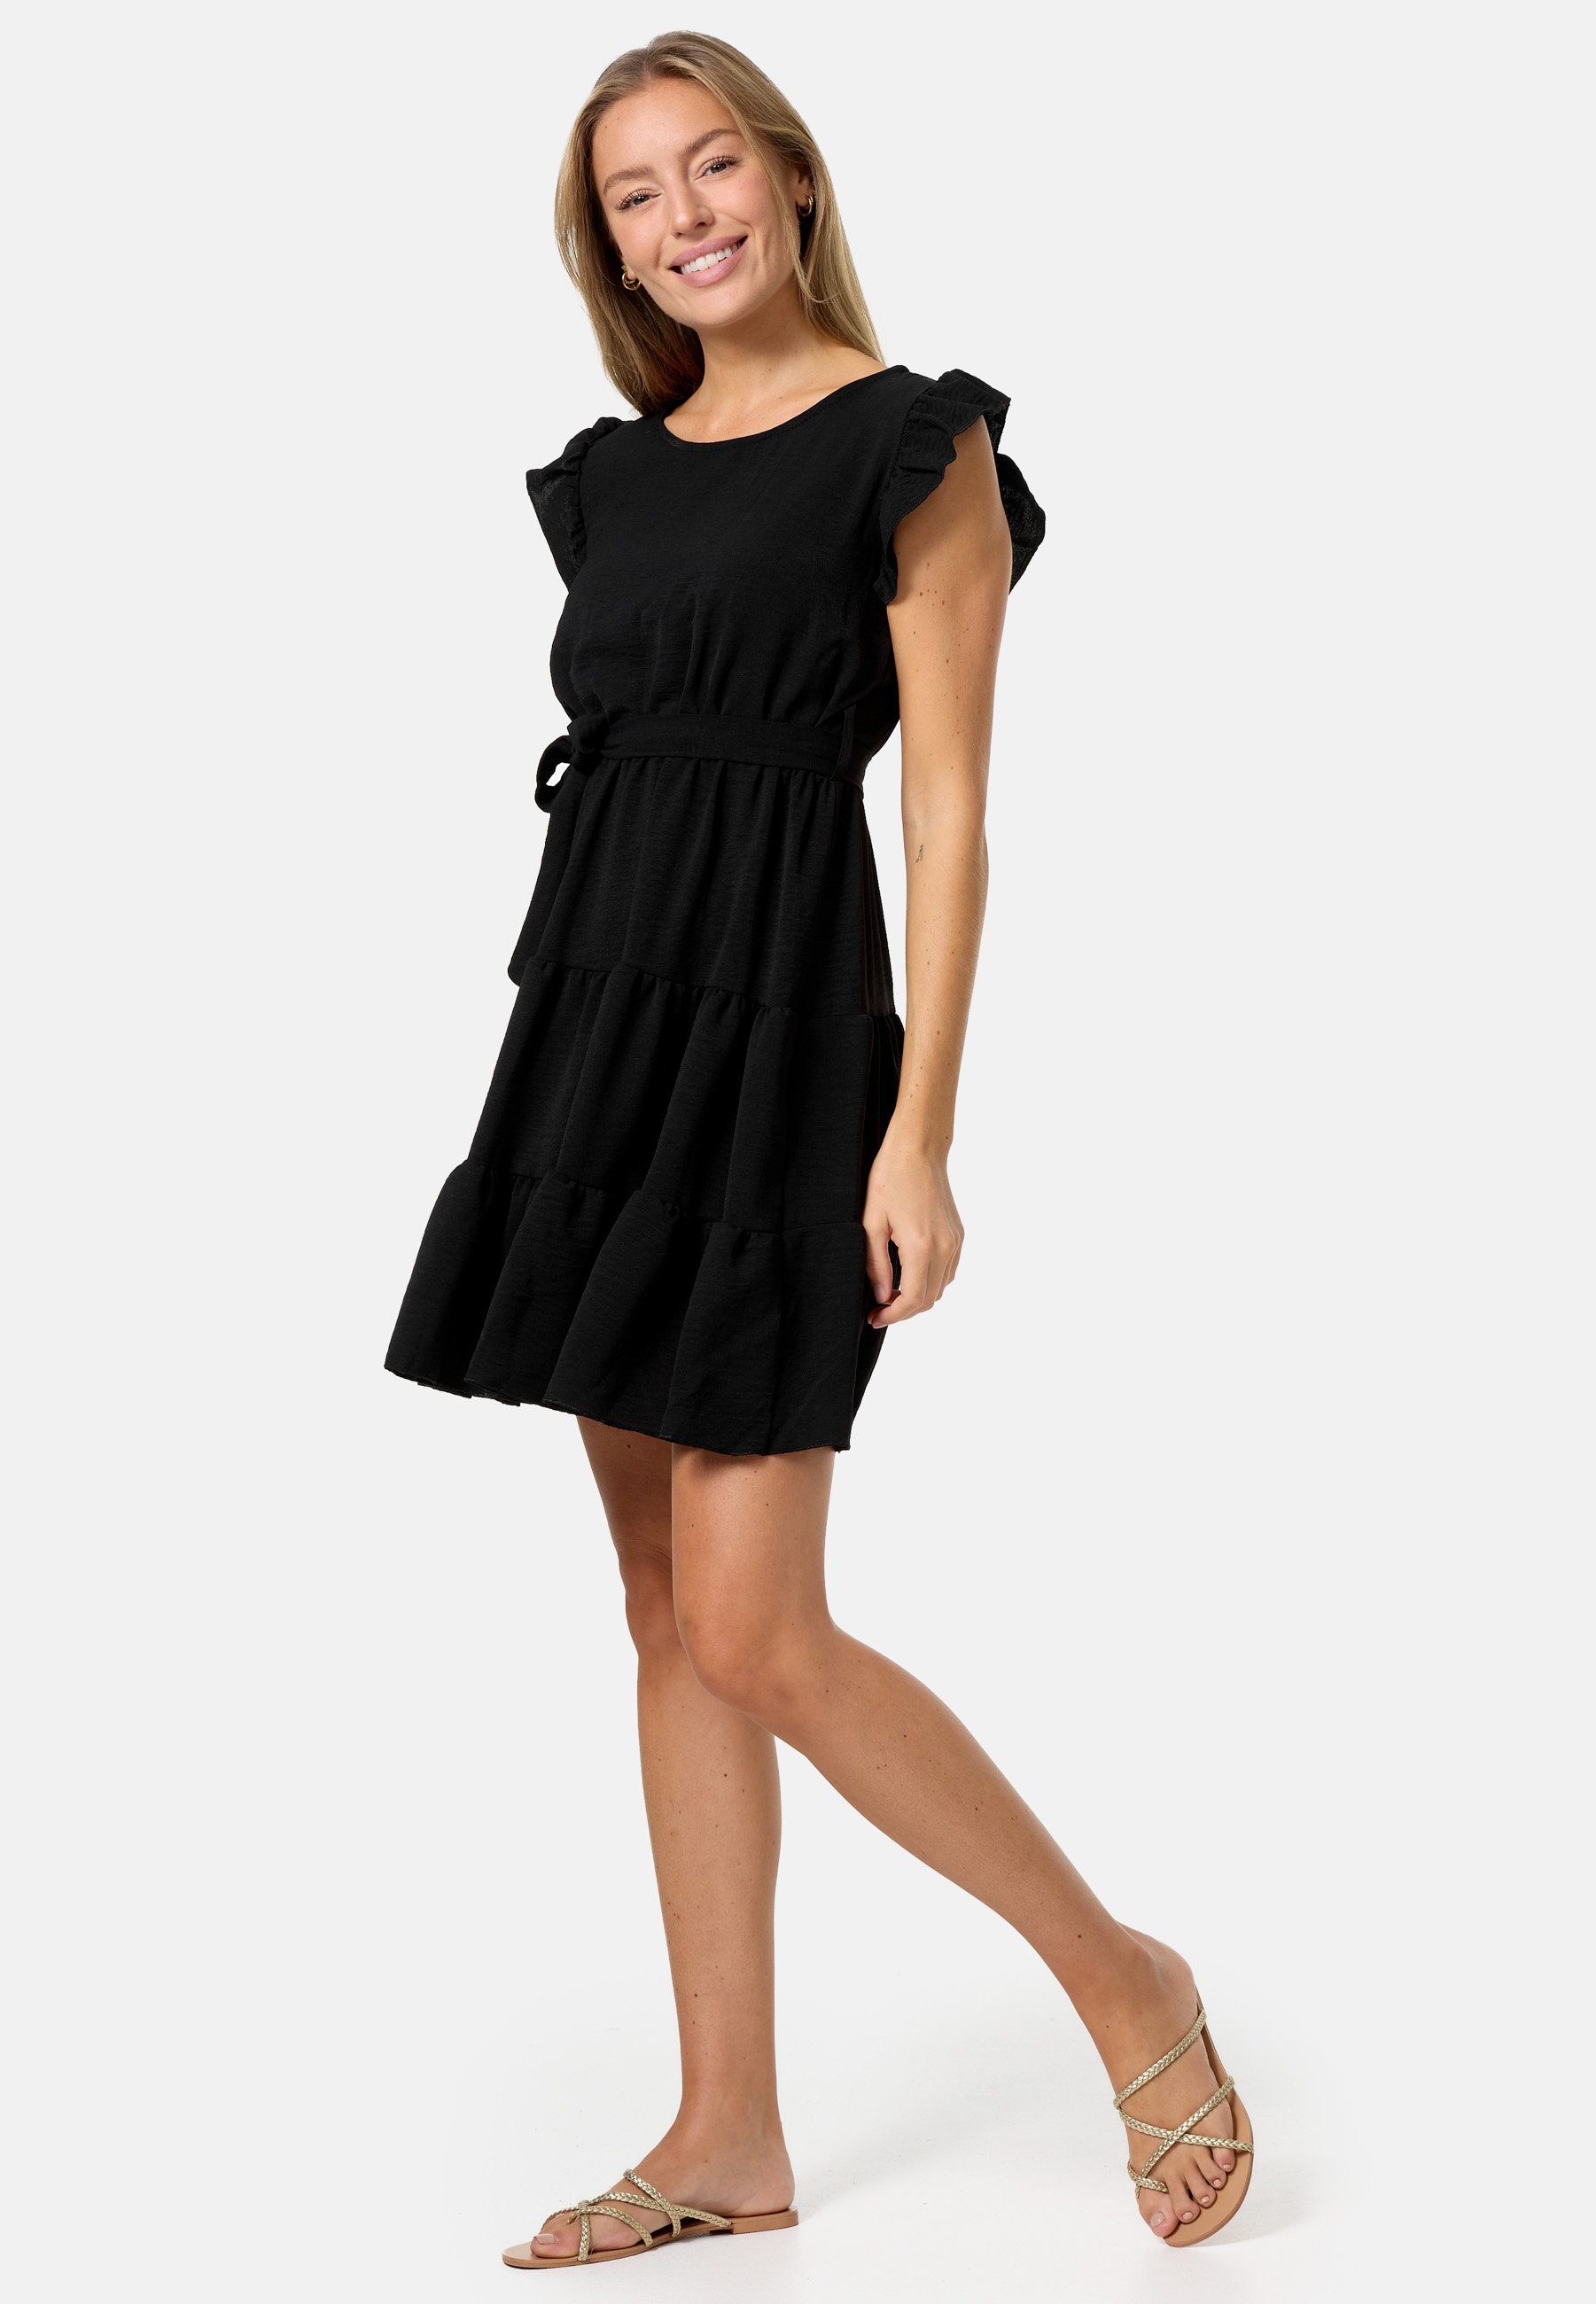 Minikleid mit Schwarz Rüschen PM in PM-27 (Sommerkleid Midi Einheitsgröße) SELECTED Kleid